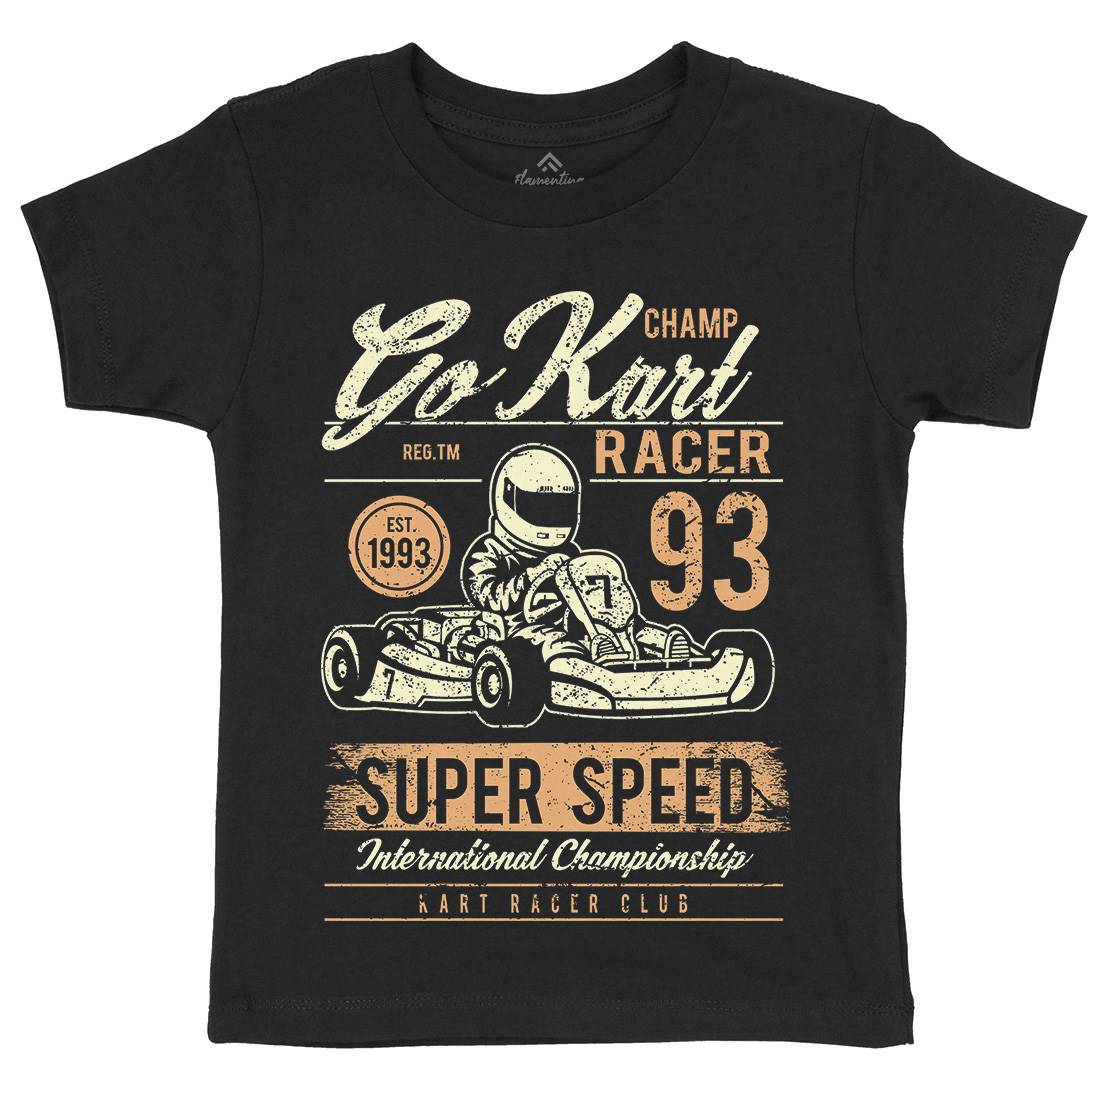 Go Kart Racer Kids Organic Crew Neck T-Shirt Cars A058